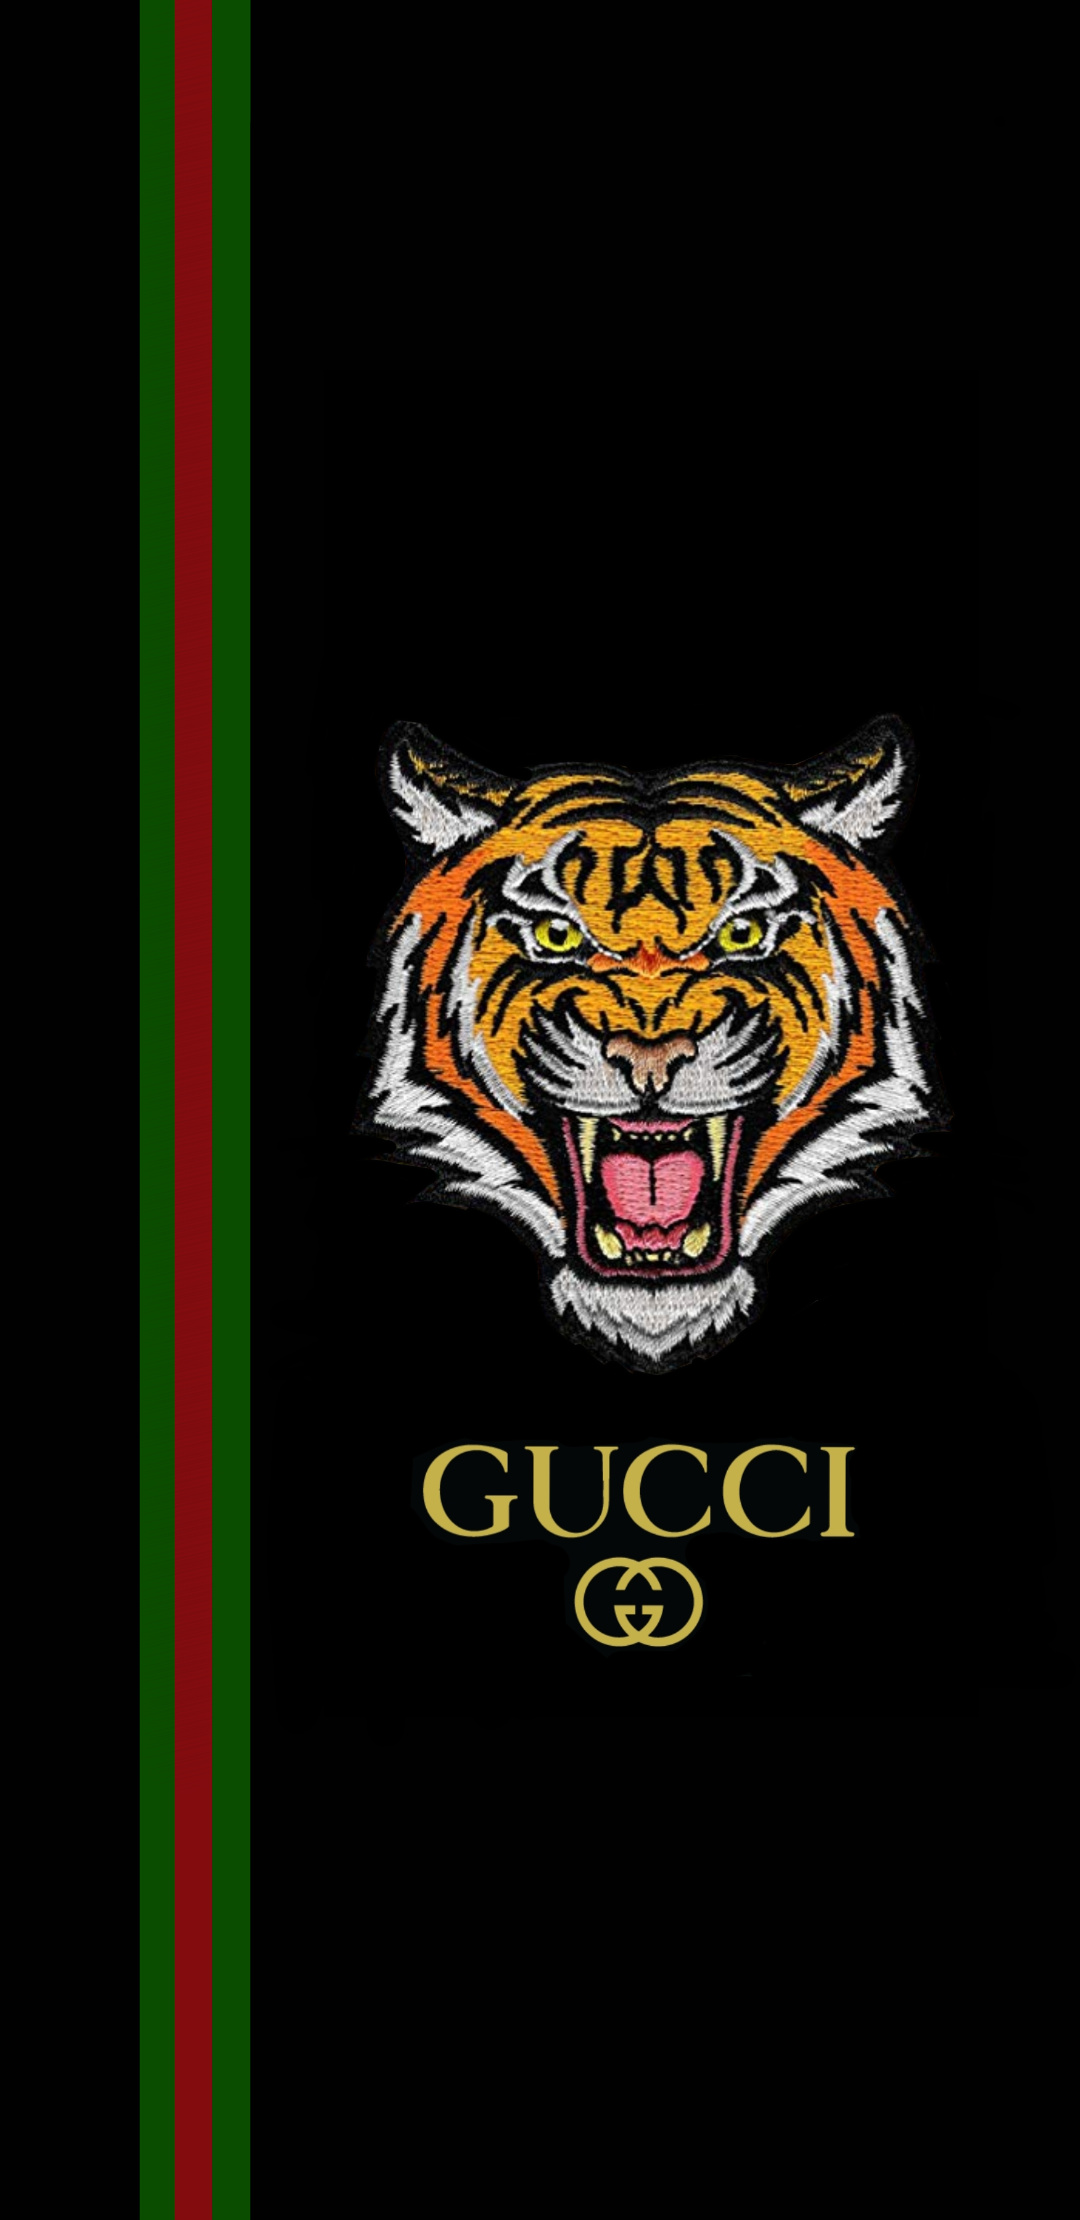 Với nền tảng thiết kế đen tuyền và logo Gucci rực rỡ, các hình ảnh Gucci đen luôn khiến người xem không thể rời mắt. Hãy chiêm ngưỡng những bức ảnh tuyệt đẹp về đề tài này và cảm nhận vẻ đẹp đầy cuốn hút.